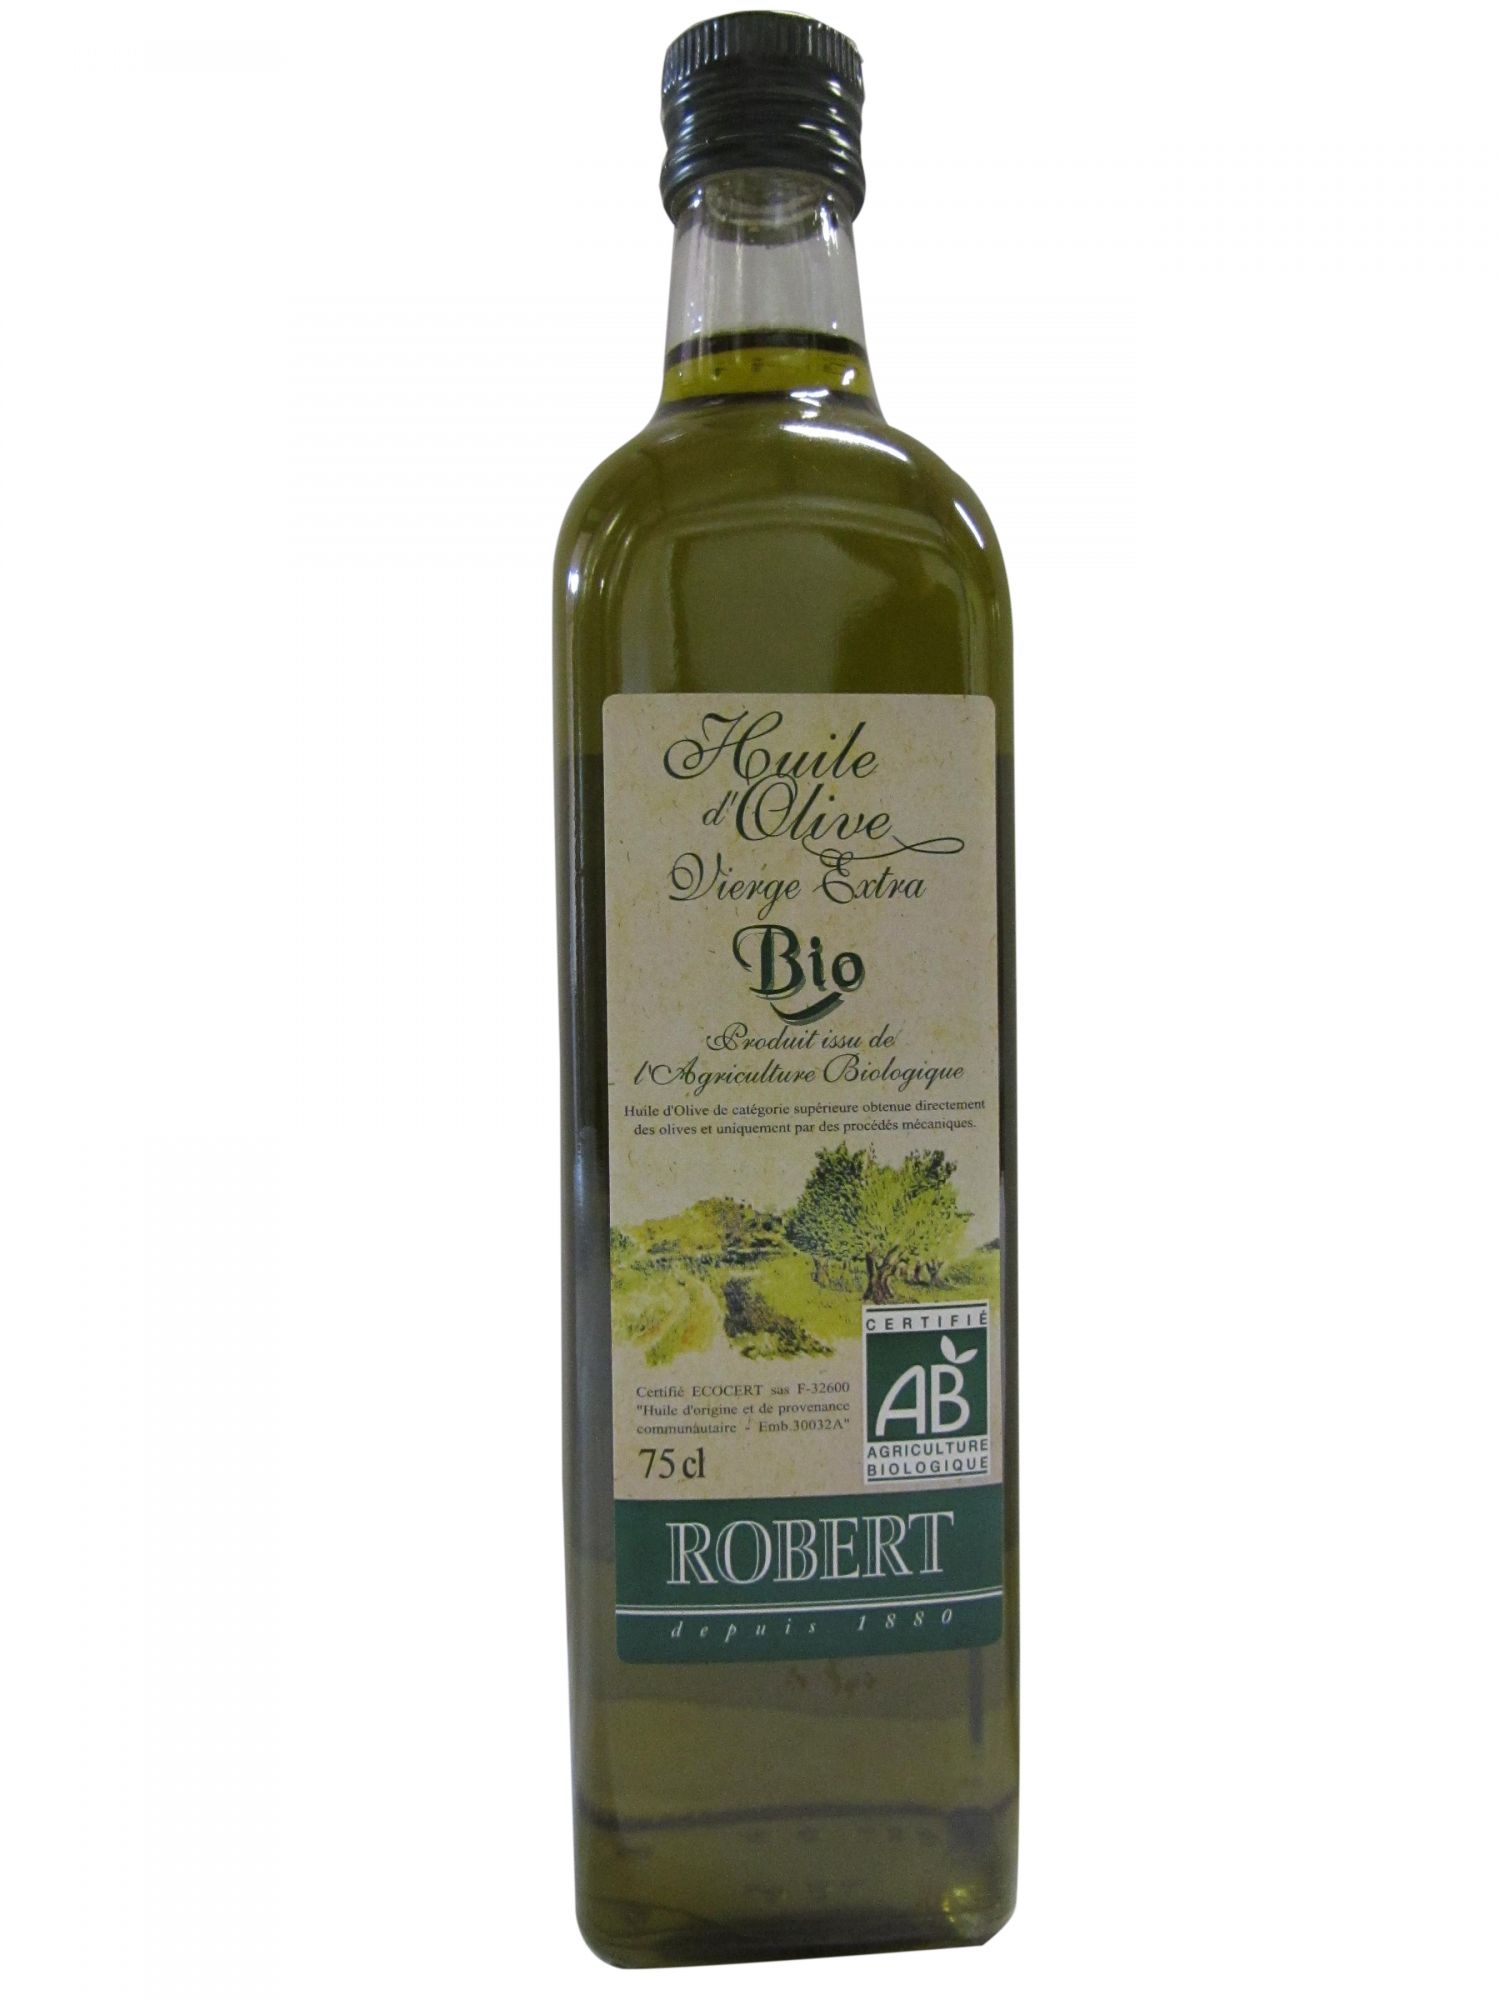 ROBERT Huile d'olive vierge extra bio fruitée non filtrée bidon 2l